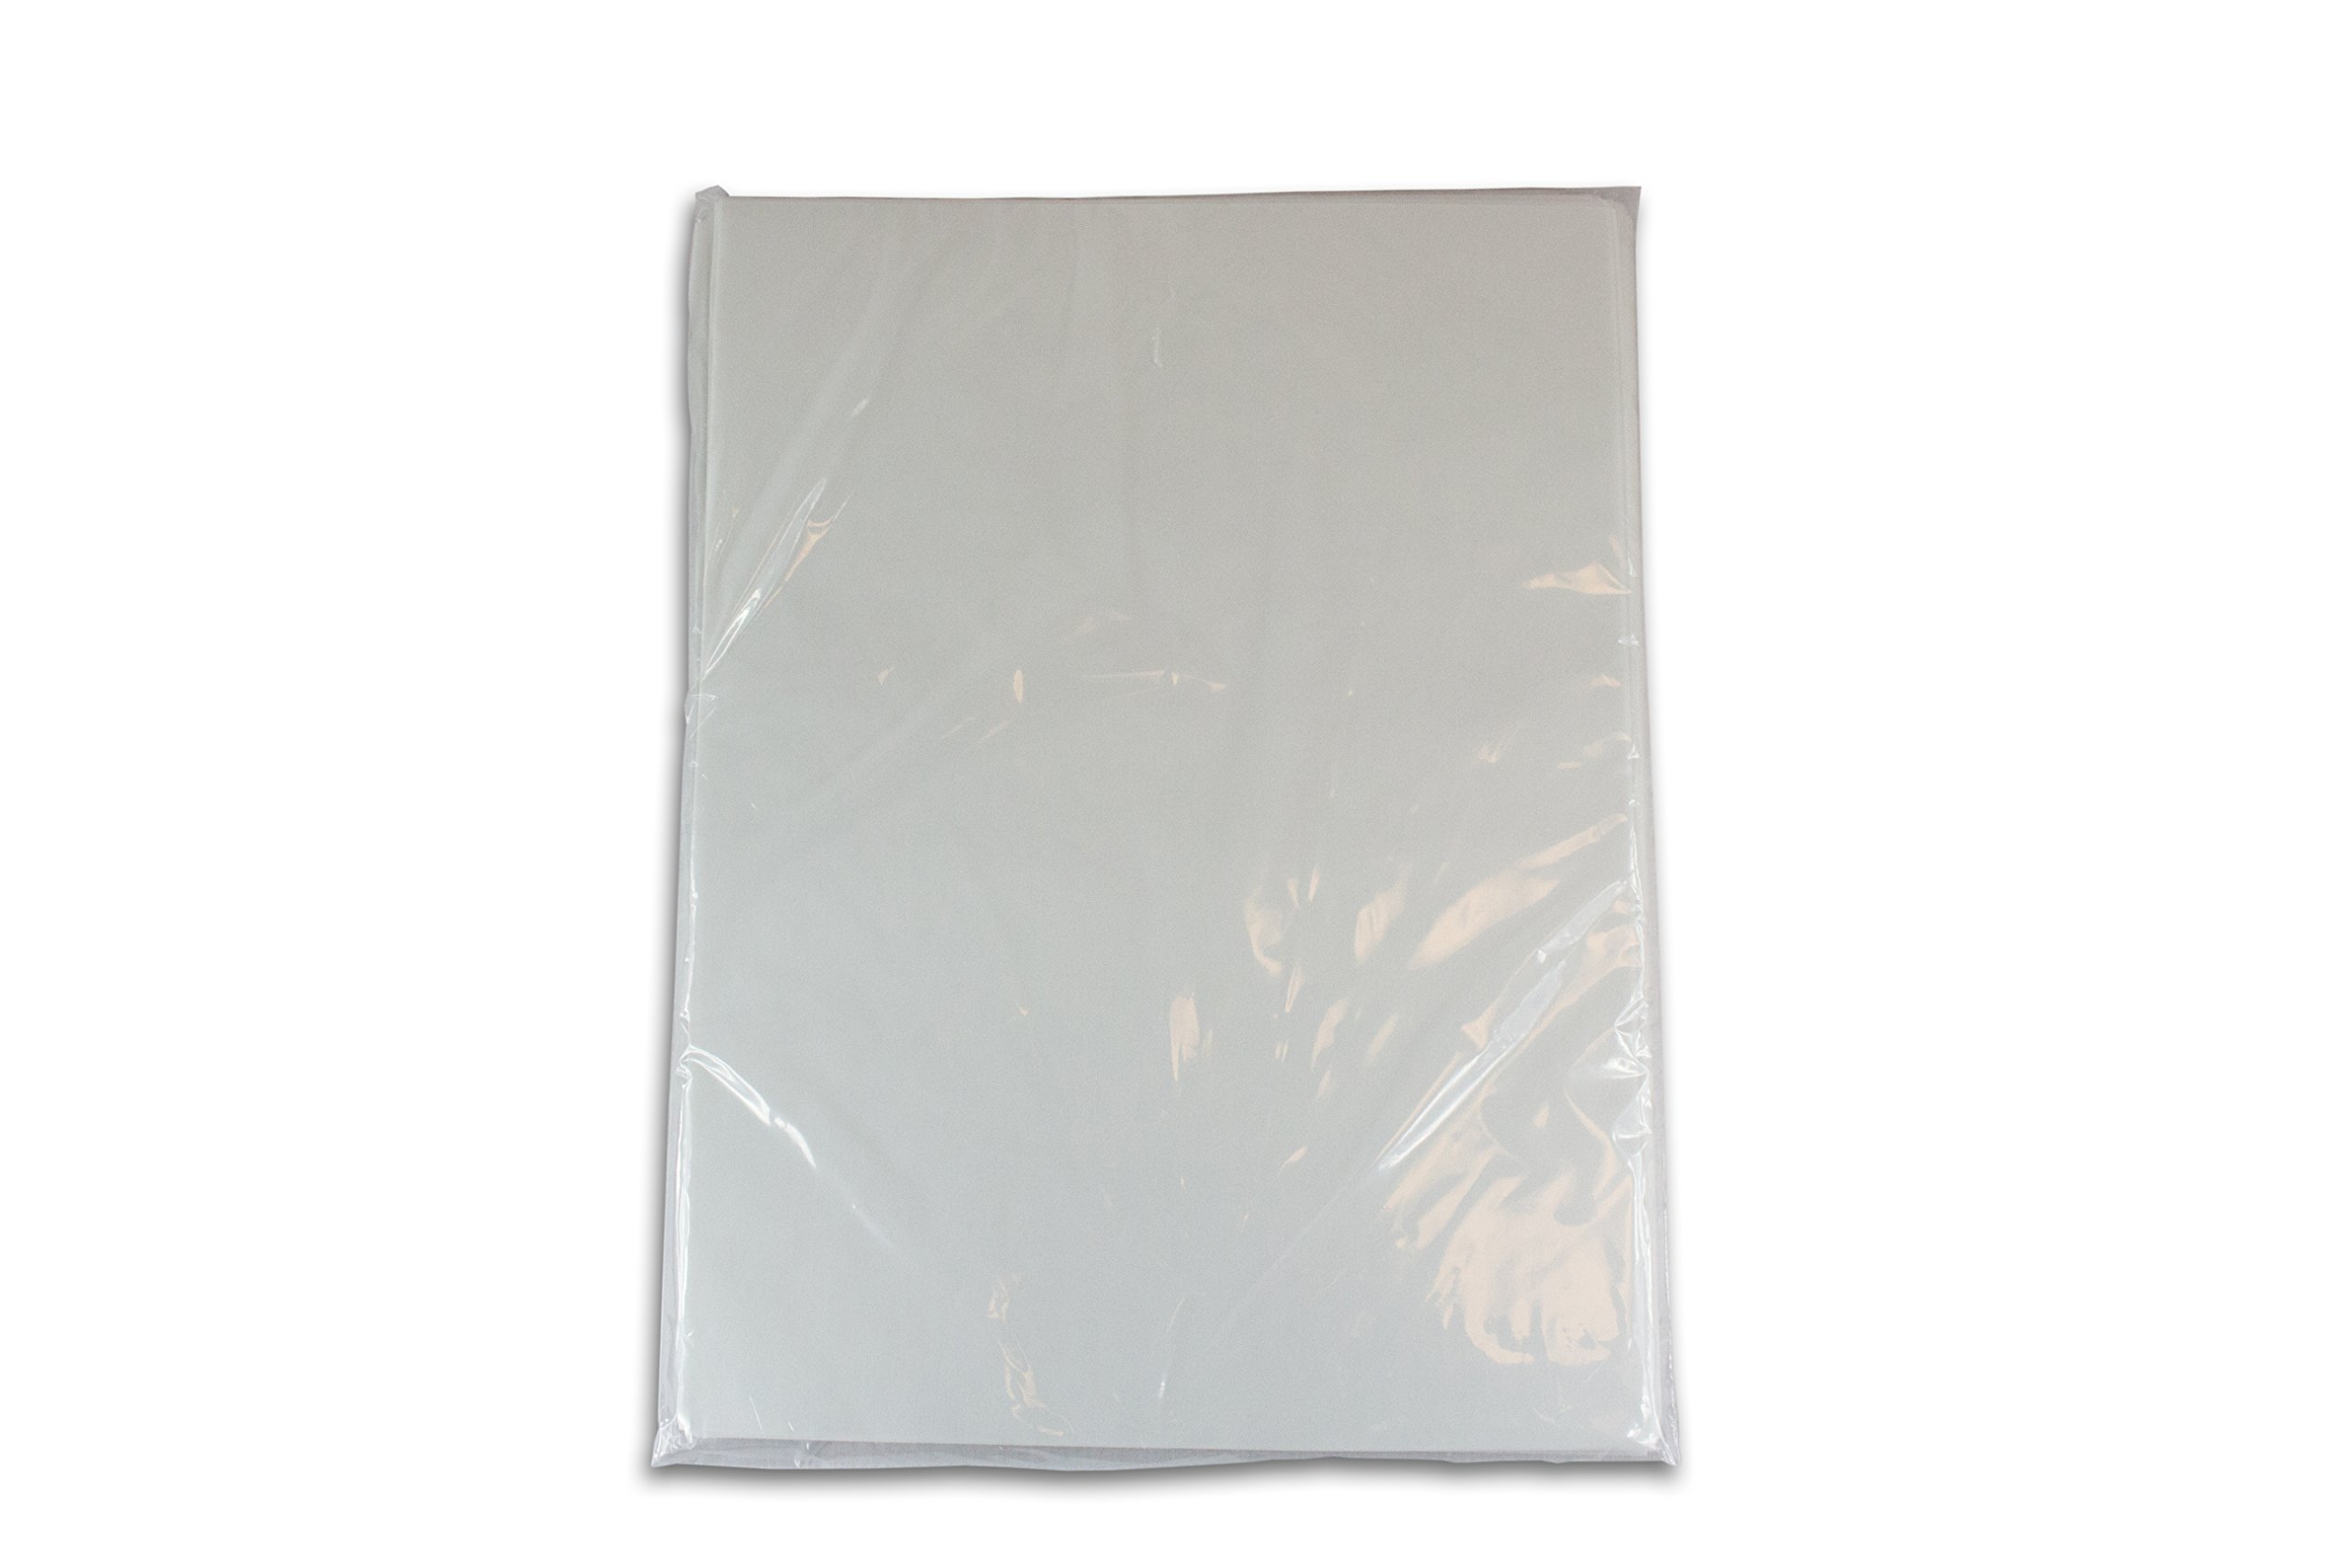 2dayShip Premium Quilon Parchmet Paper Baking Sheets, Pan liner, White, 12 X 16, 300 Count